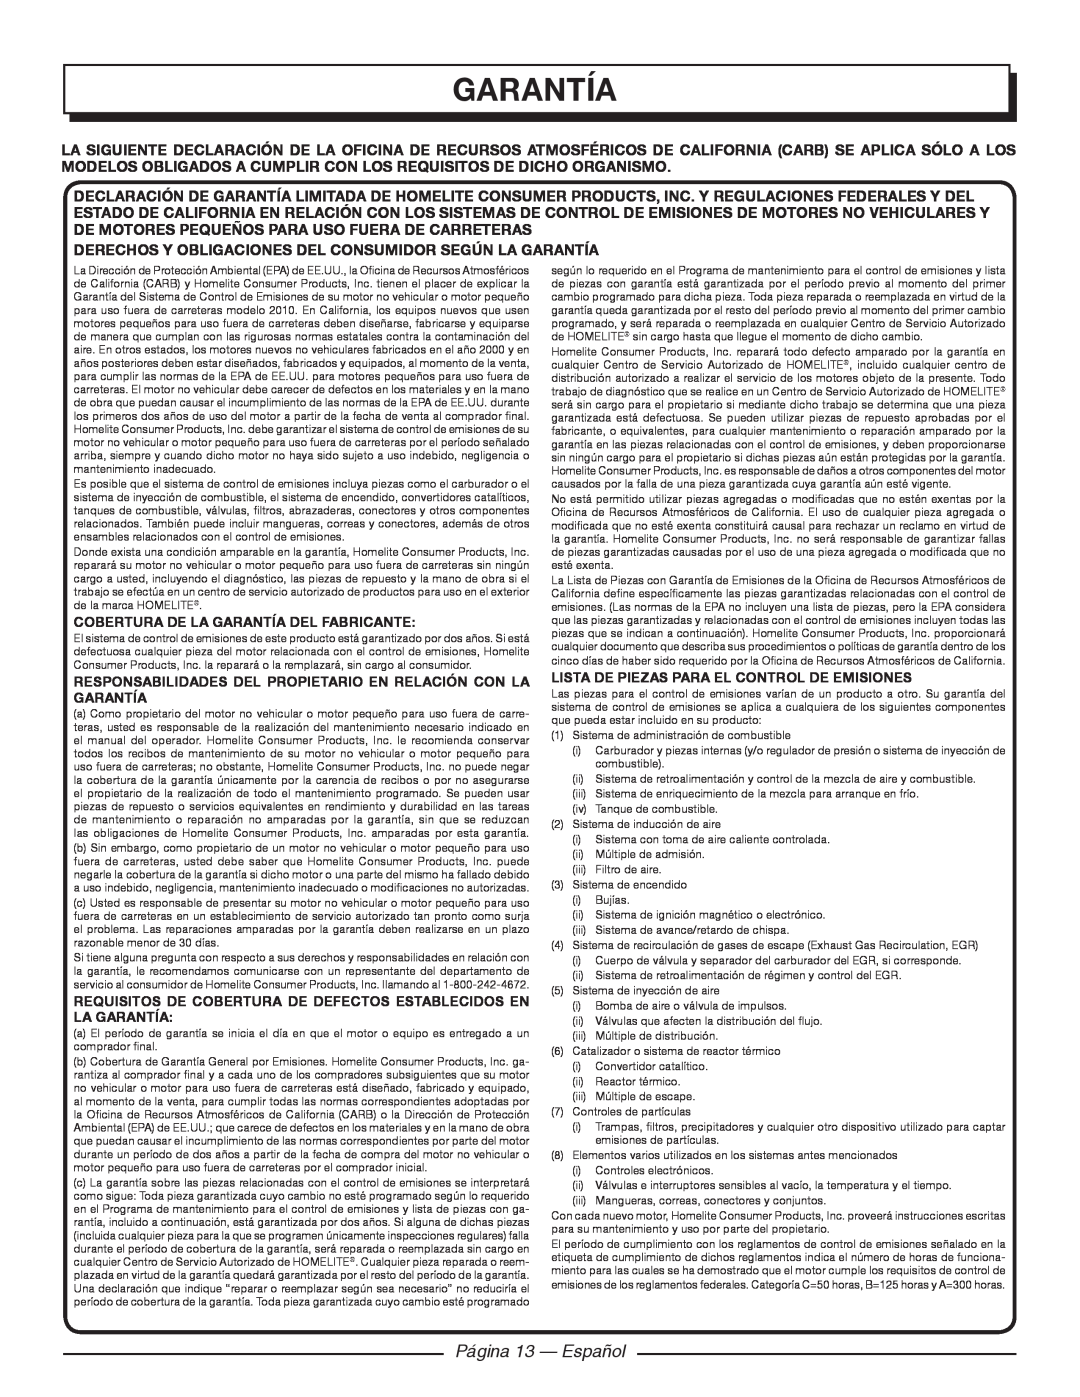 Homelite UT09520 manuel dutilisation Página 13 - Español, Derechos Y Obligaciones Del Consumidor Según La Garantía 